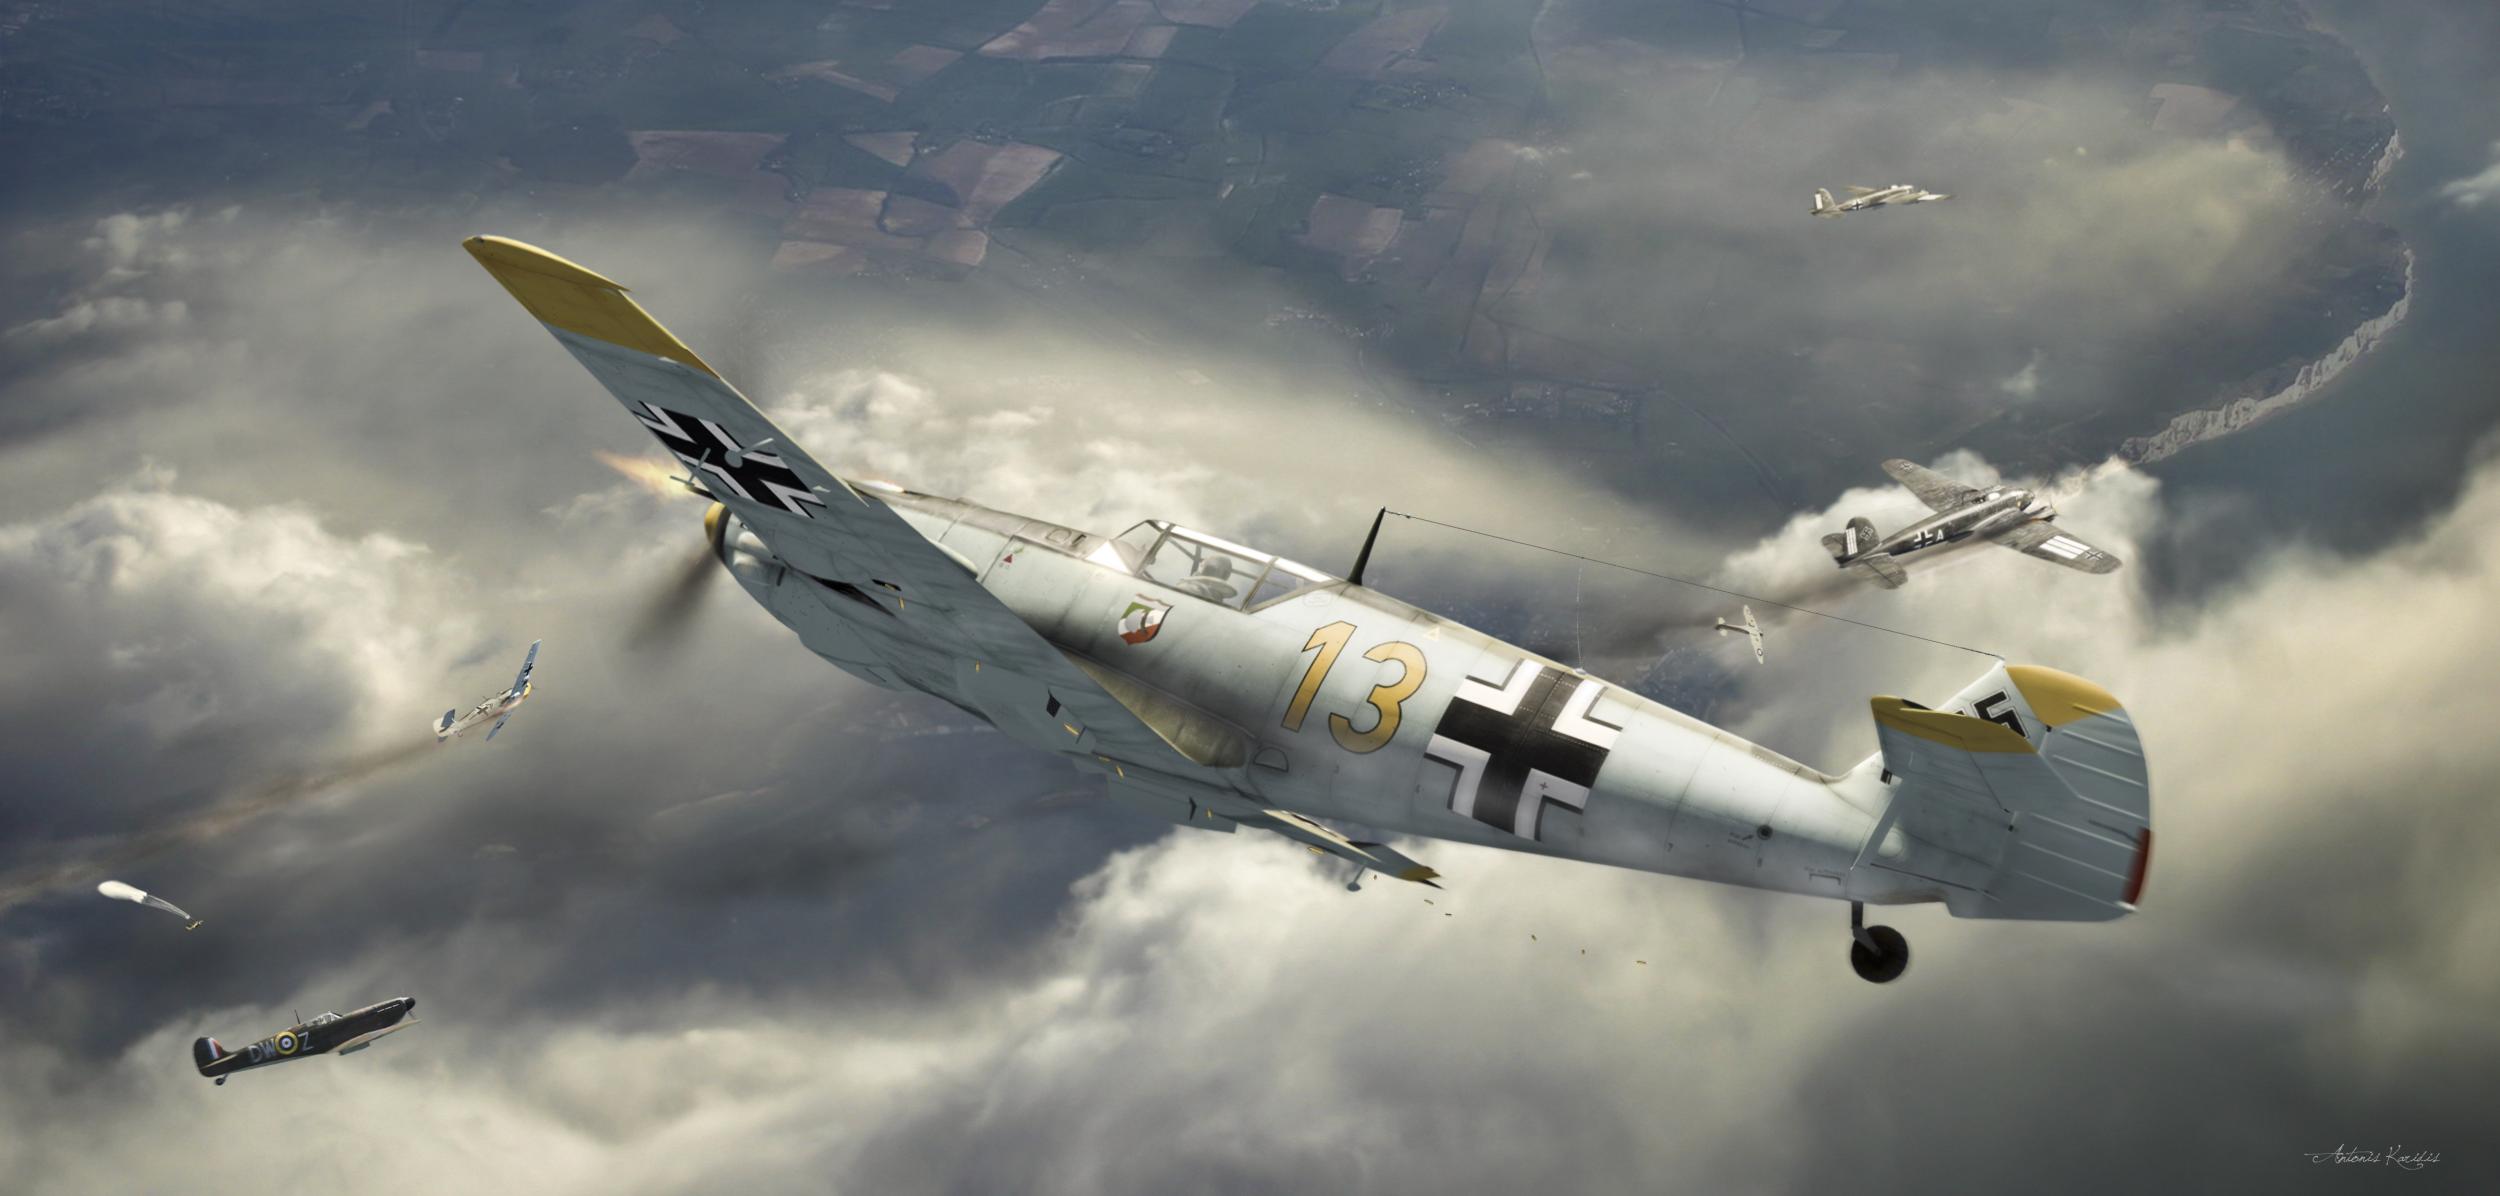 Messerschmitt Bf 109 E Hd Wallpaper Background Image 2500x1196 Images, Photos, Reviews